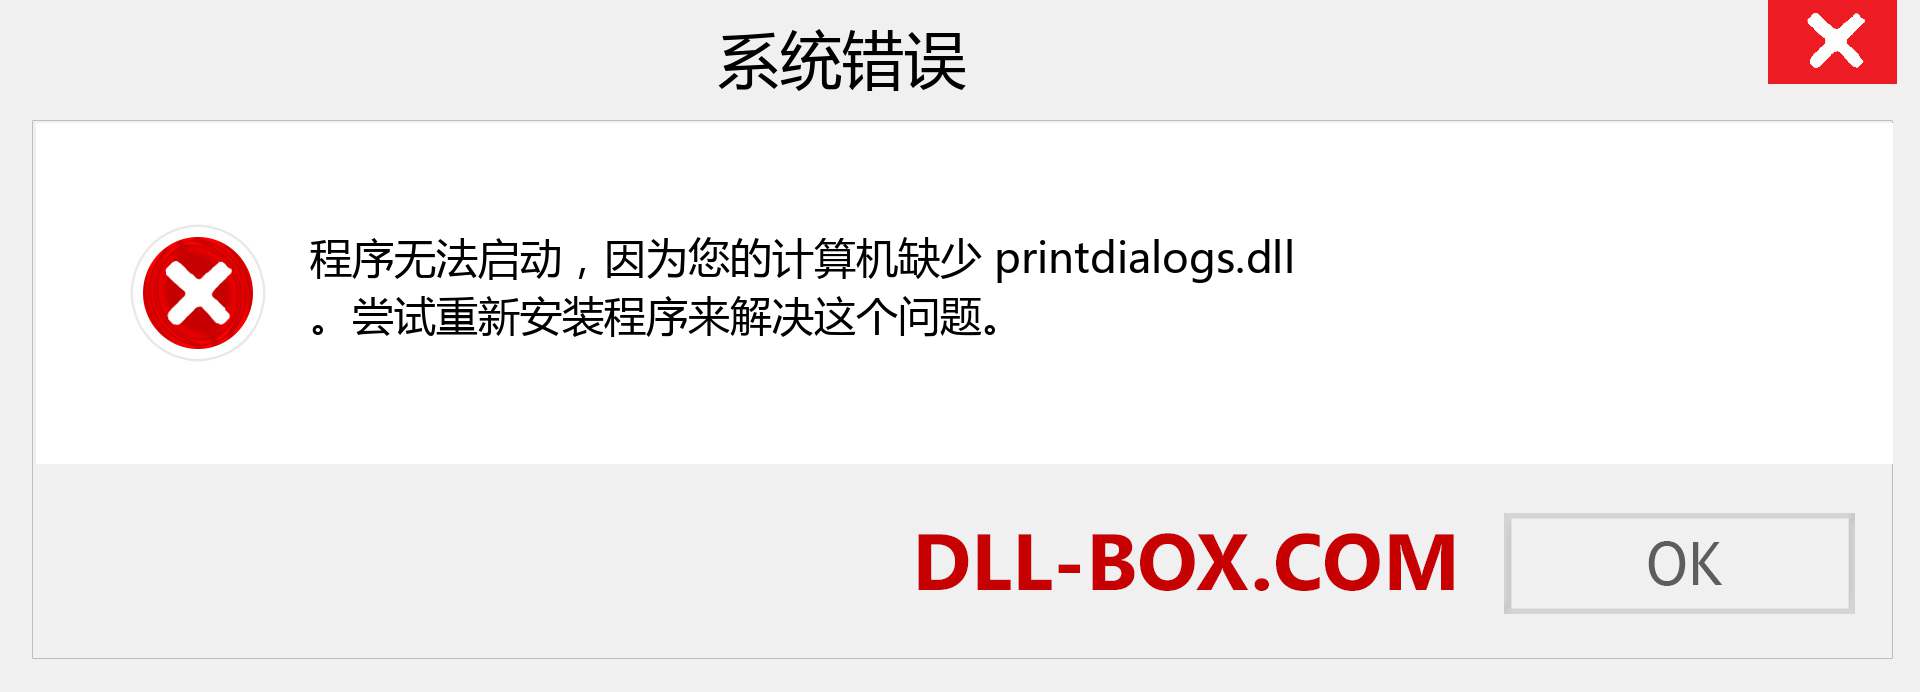 printdialogs.dll 文件丢失？。 适用于 Windows 7、8、10 的下载 - 修复 Windows、照片、图像上的 printdialogs dll 丢失错误